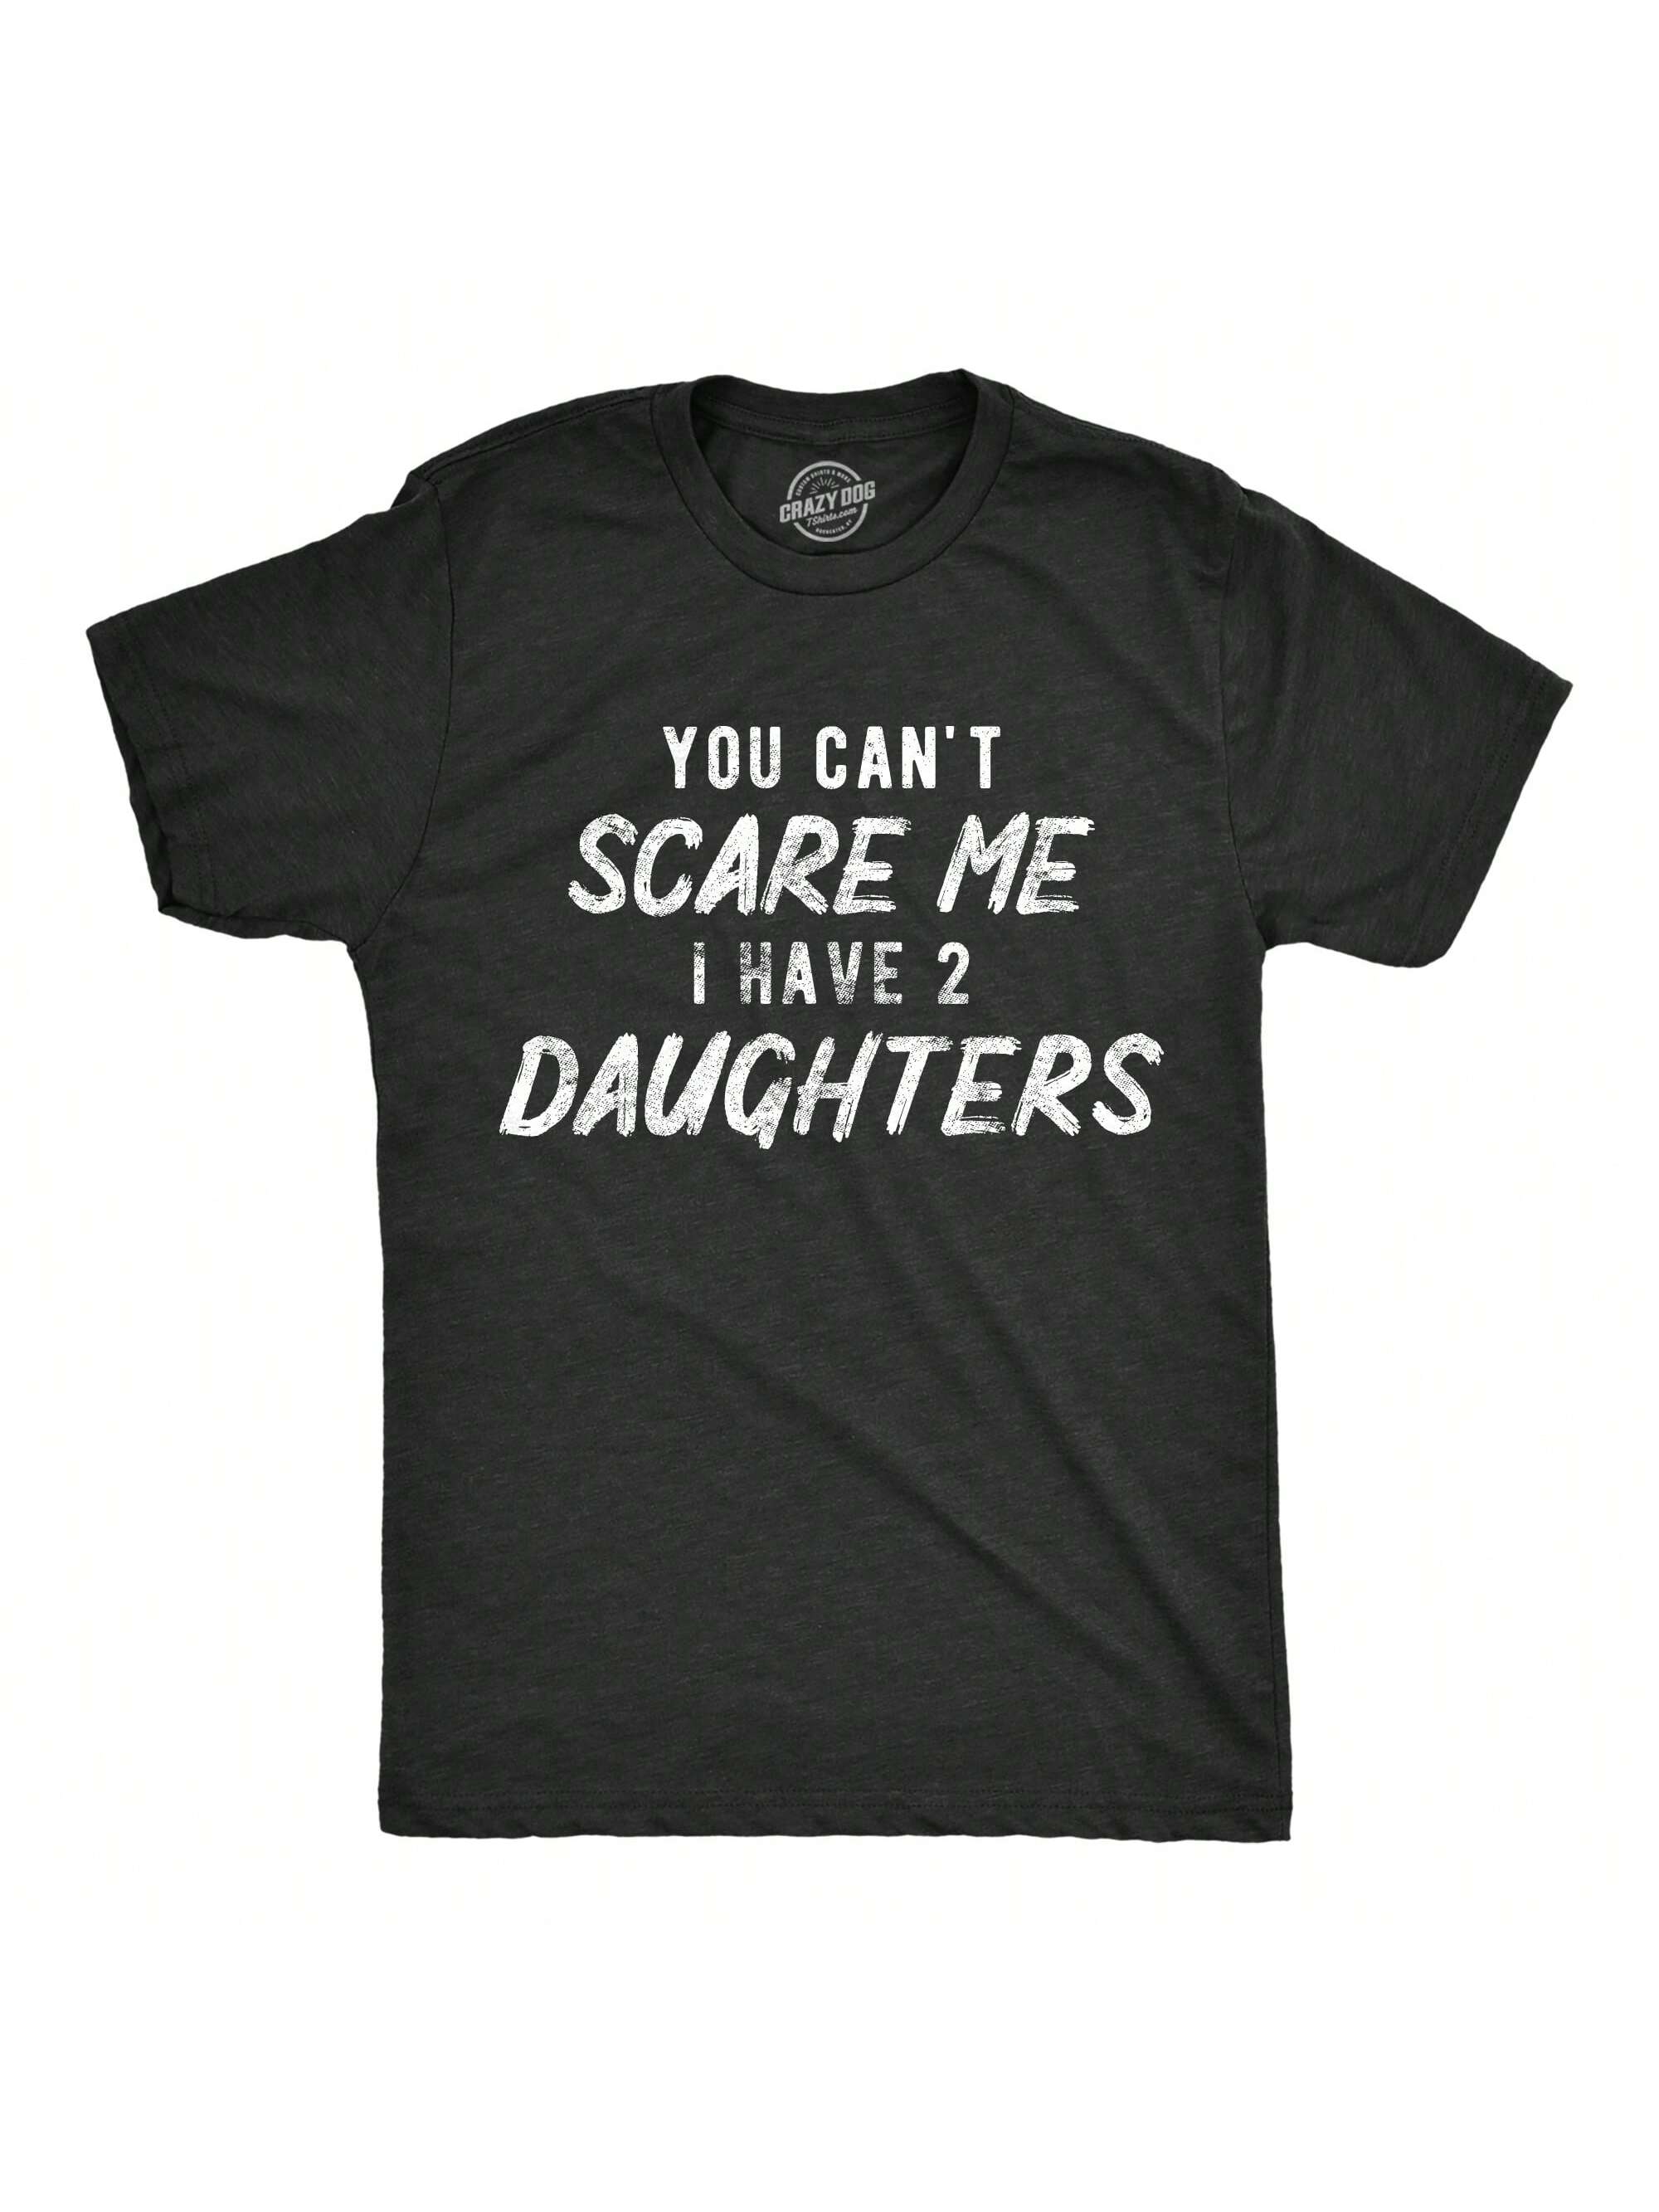 Мужская футболка «Ты не напугаешь меня, хизер блэк - две дочери